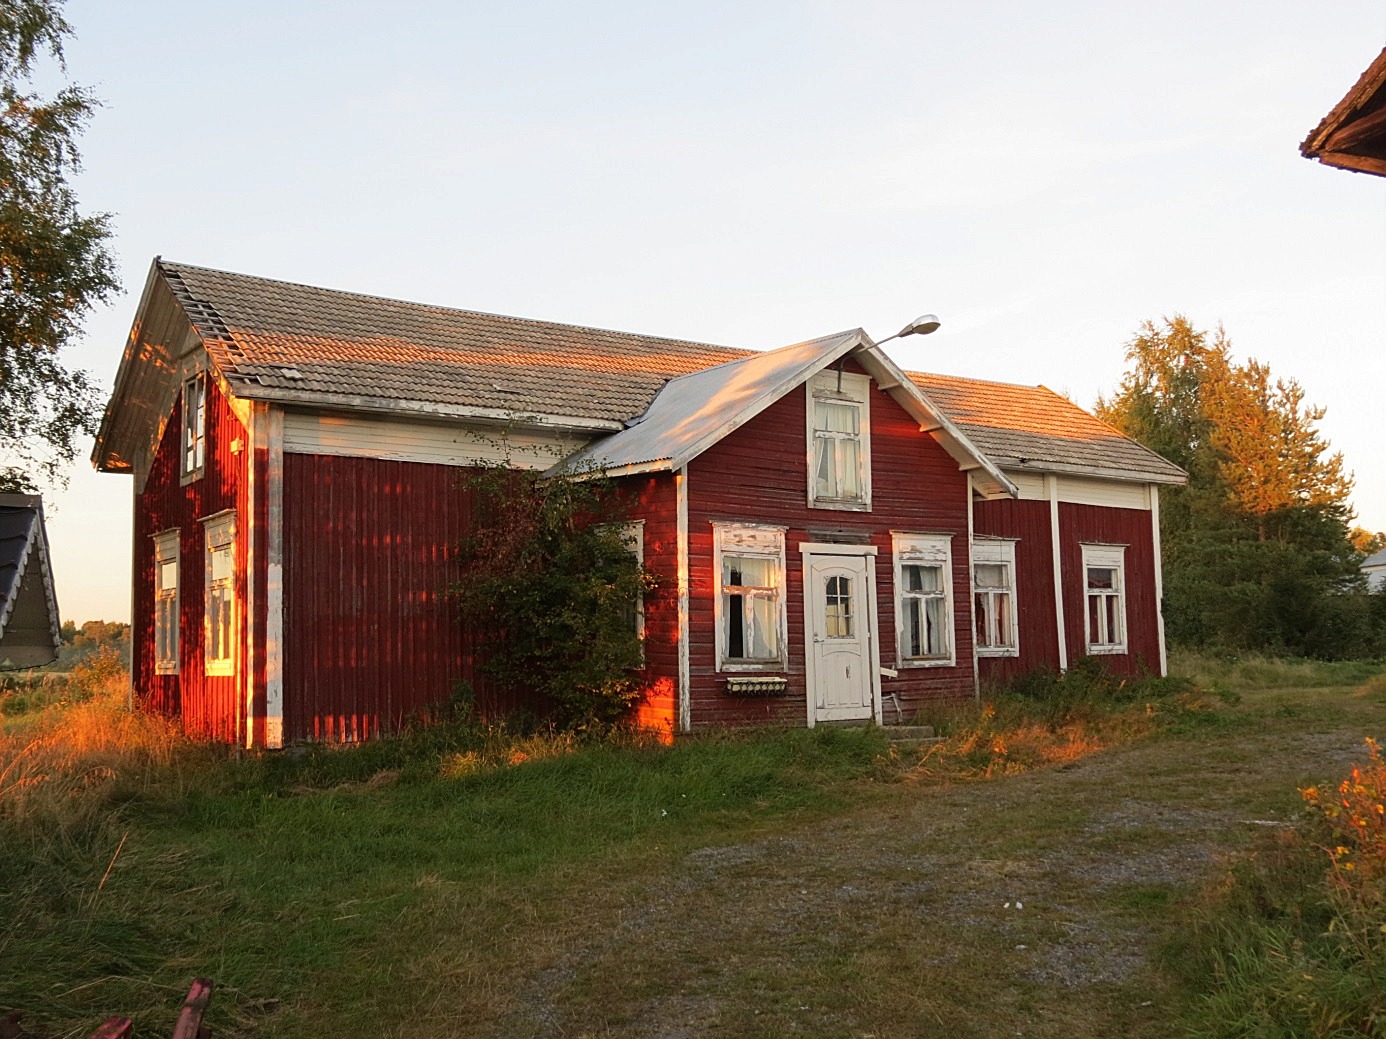 Huset fotograferat från gårdssidan 2013.